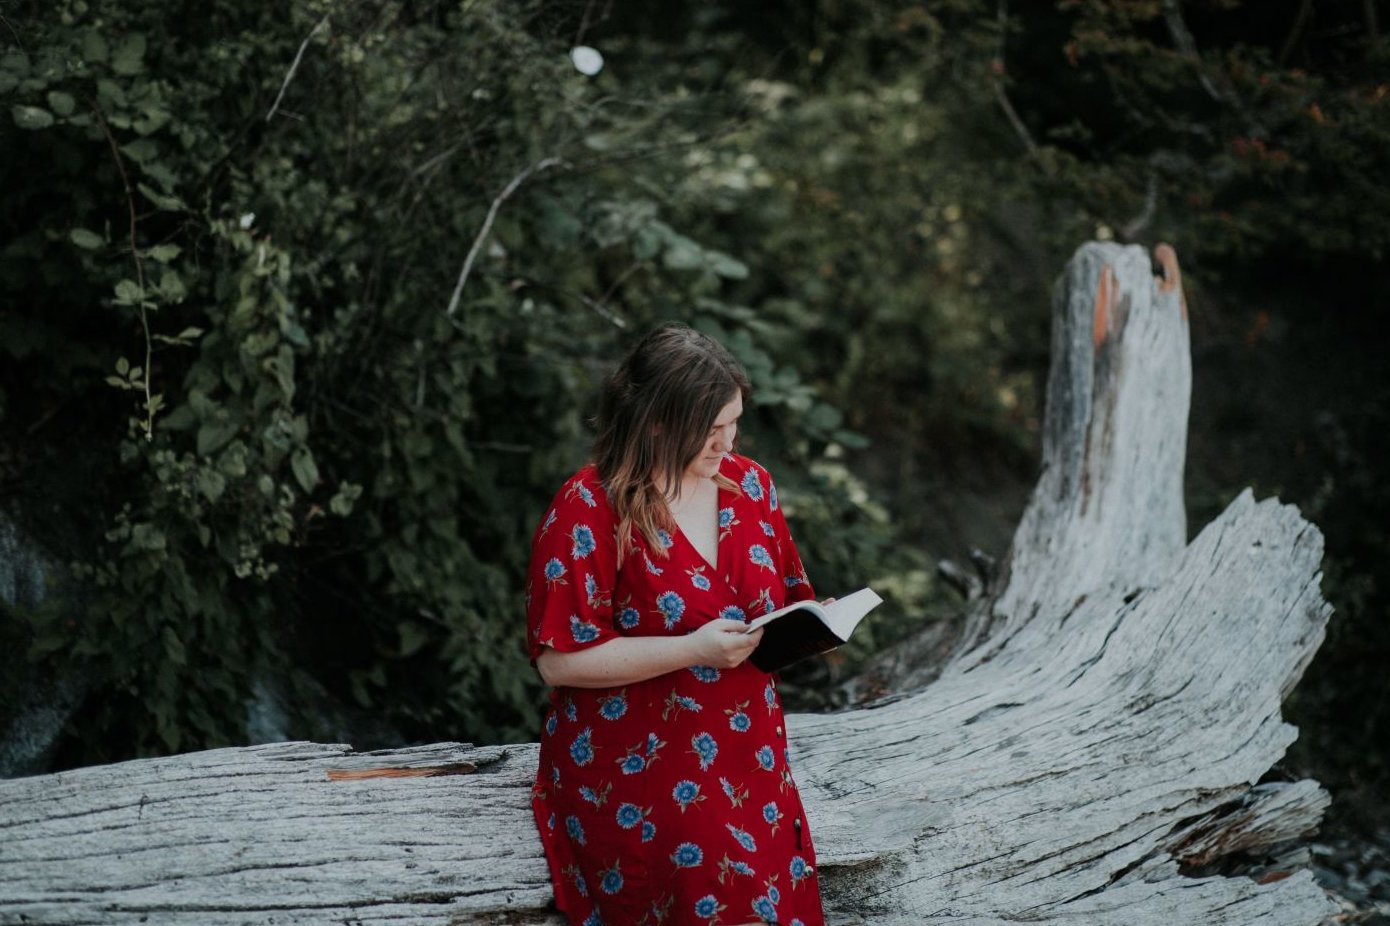 Junge Frau im roten Kleid mit einem aufegschlagenen Buch in der Hand lehnt an einem Baumstamm